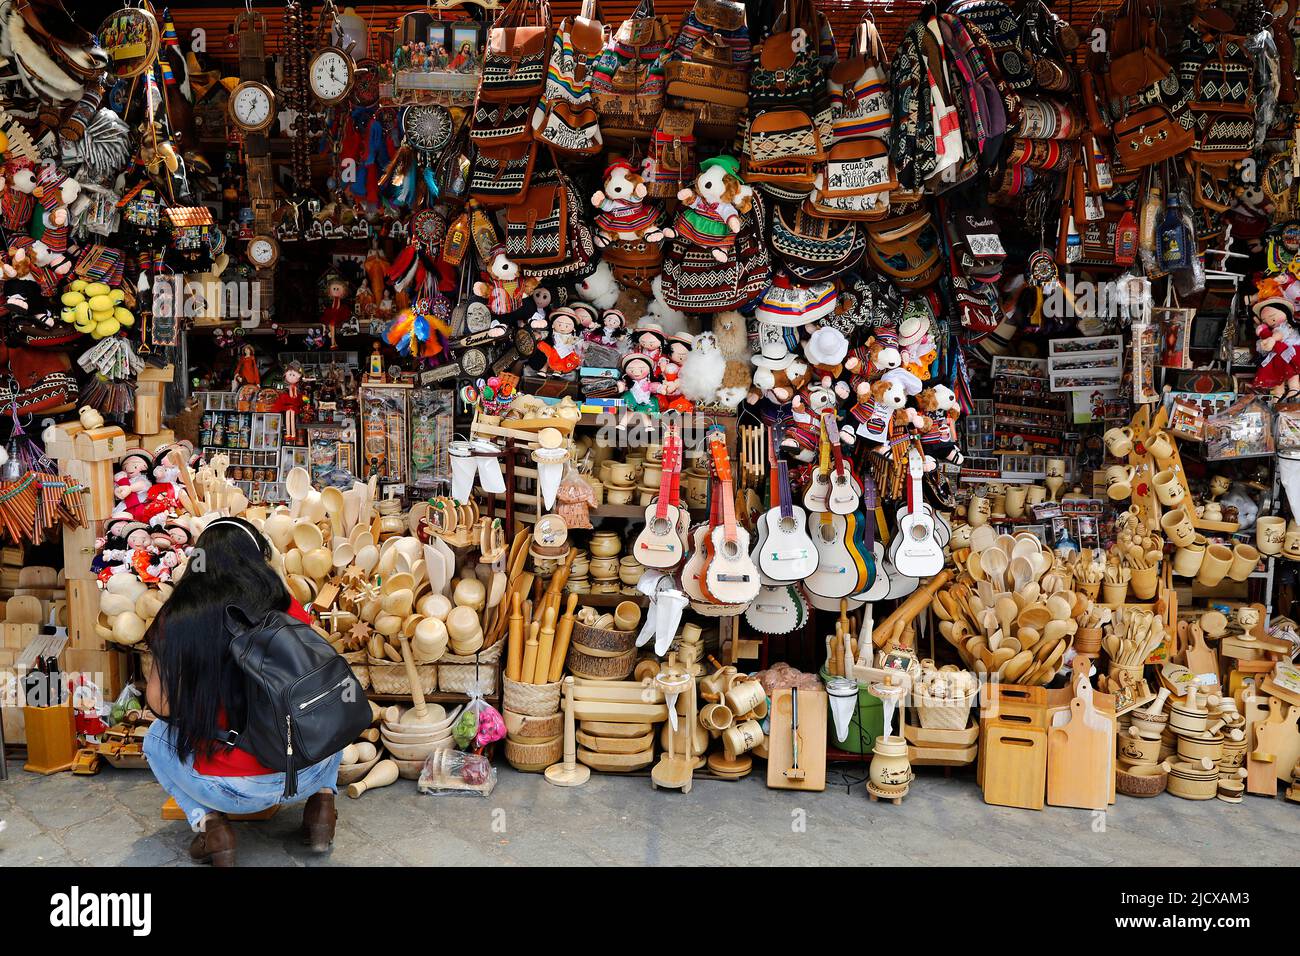 Market shop in Cuenca, Ecuador, South America Stock Photo